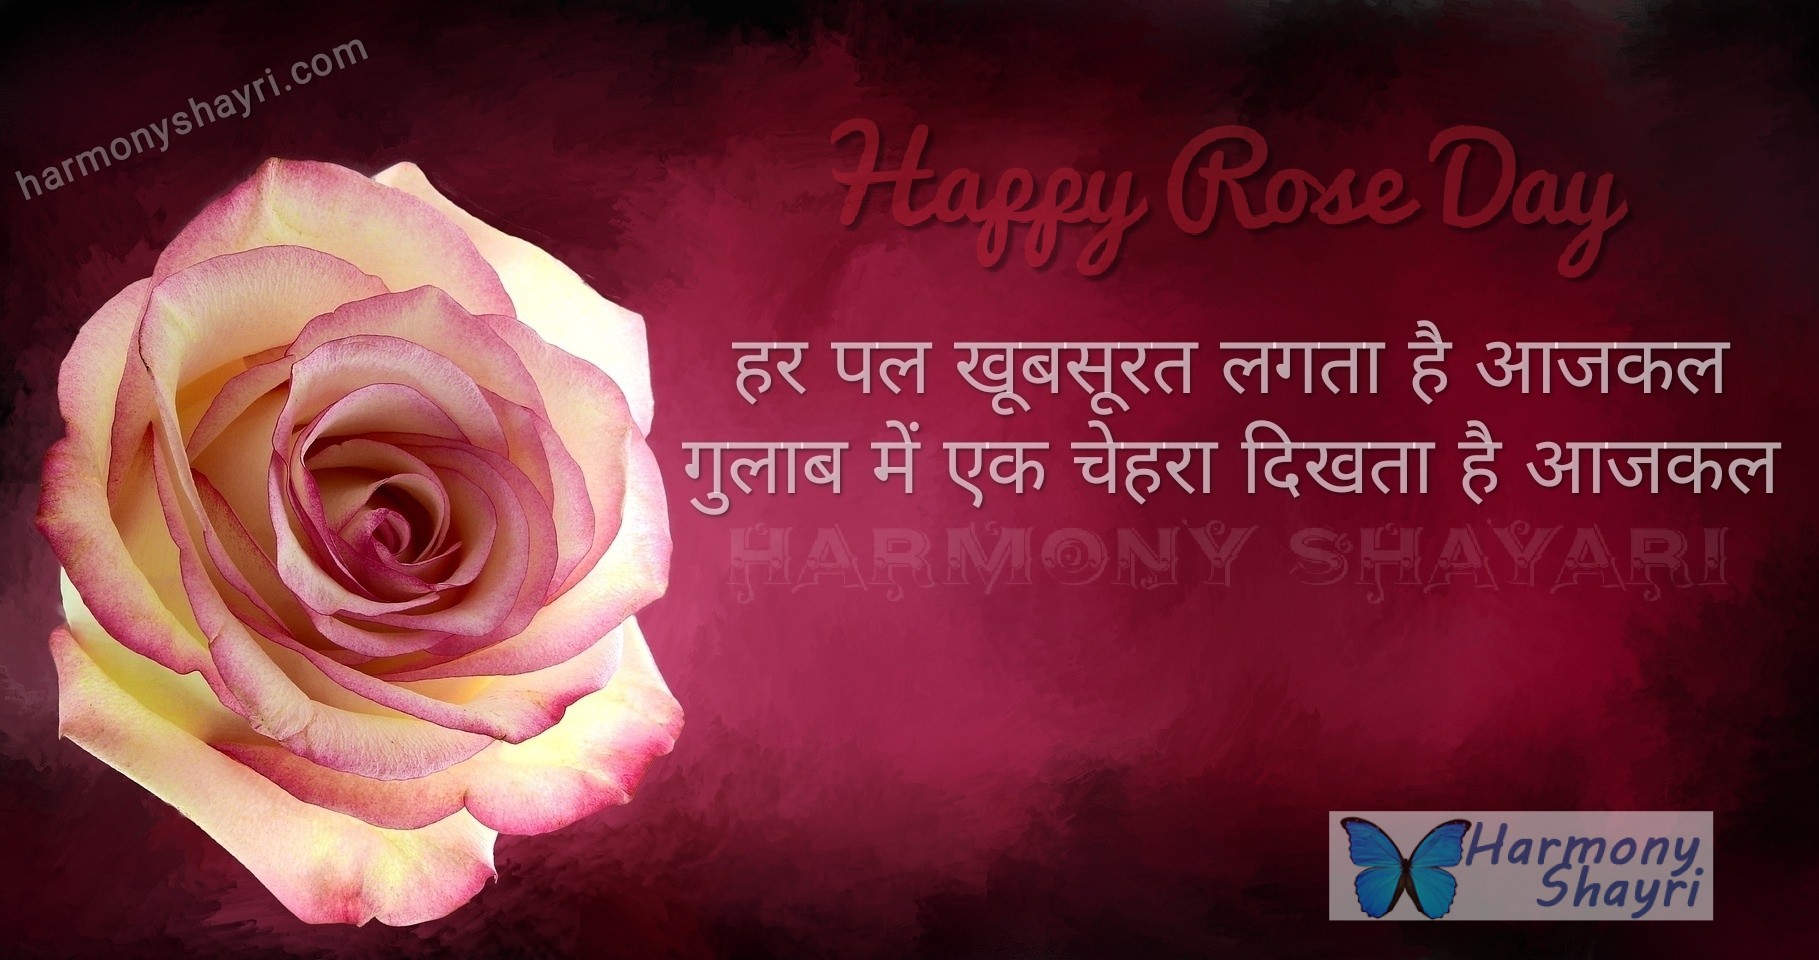 Har pal khoobsurat lagta hai – Happy Rose Day